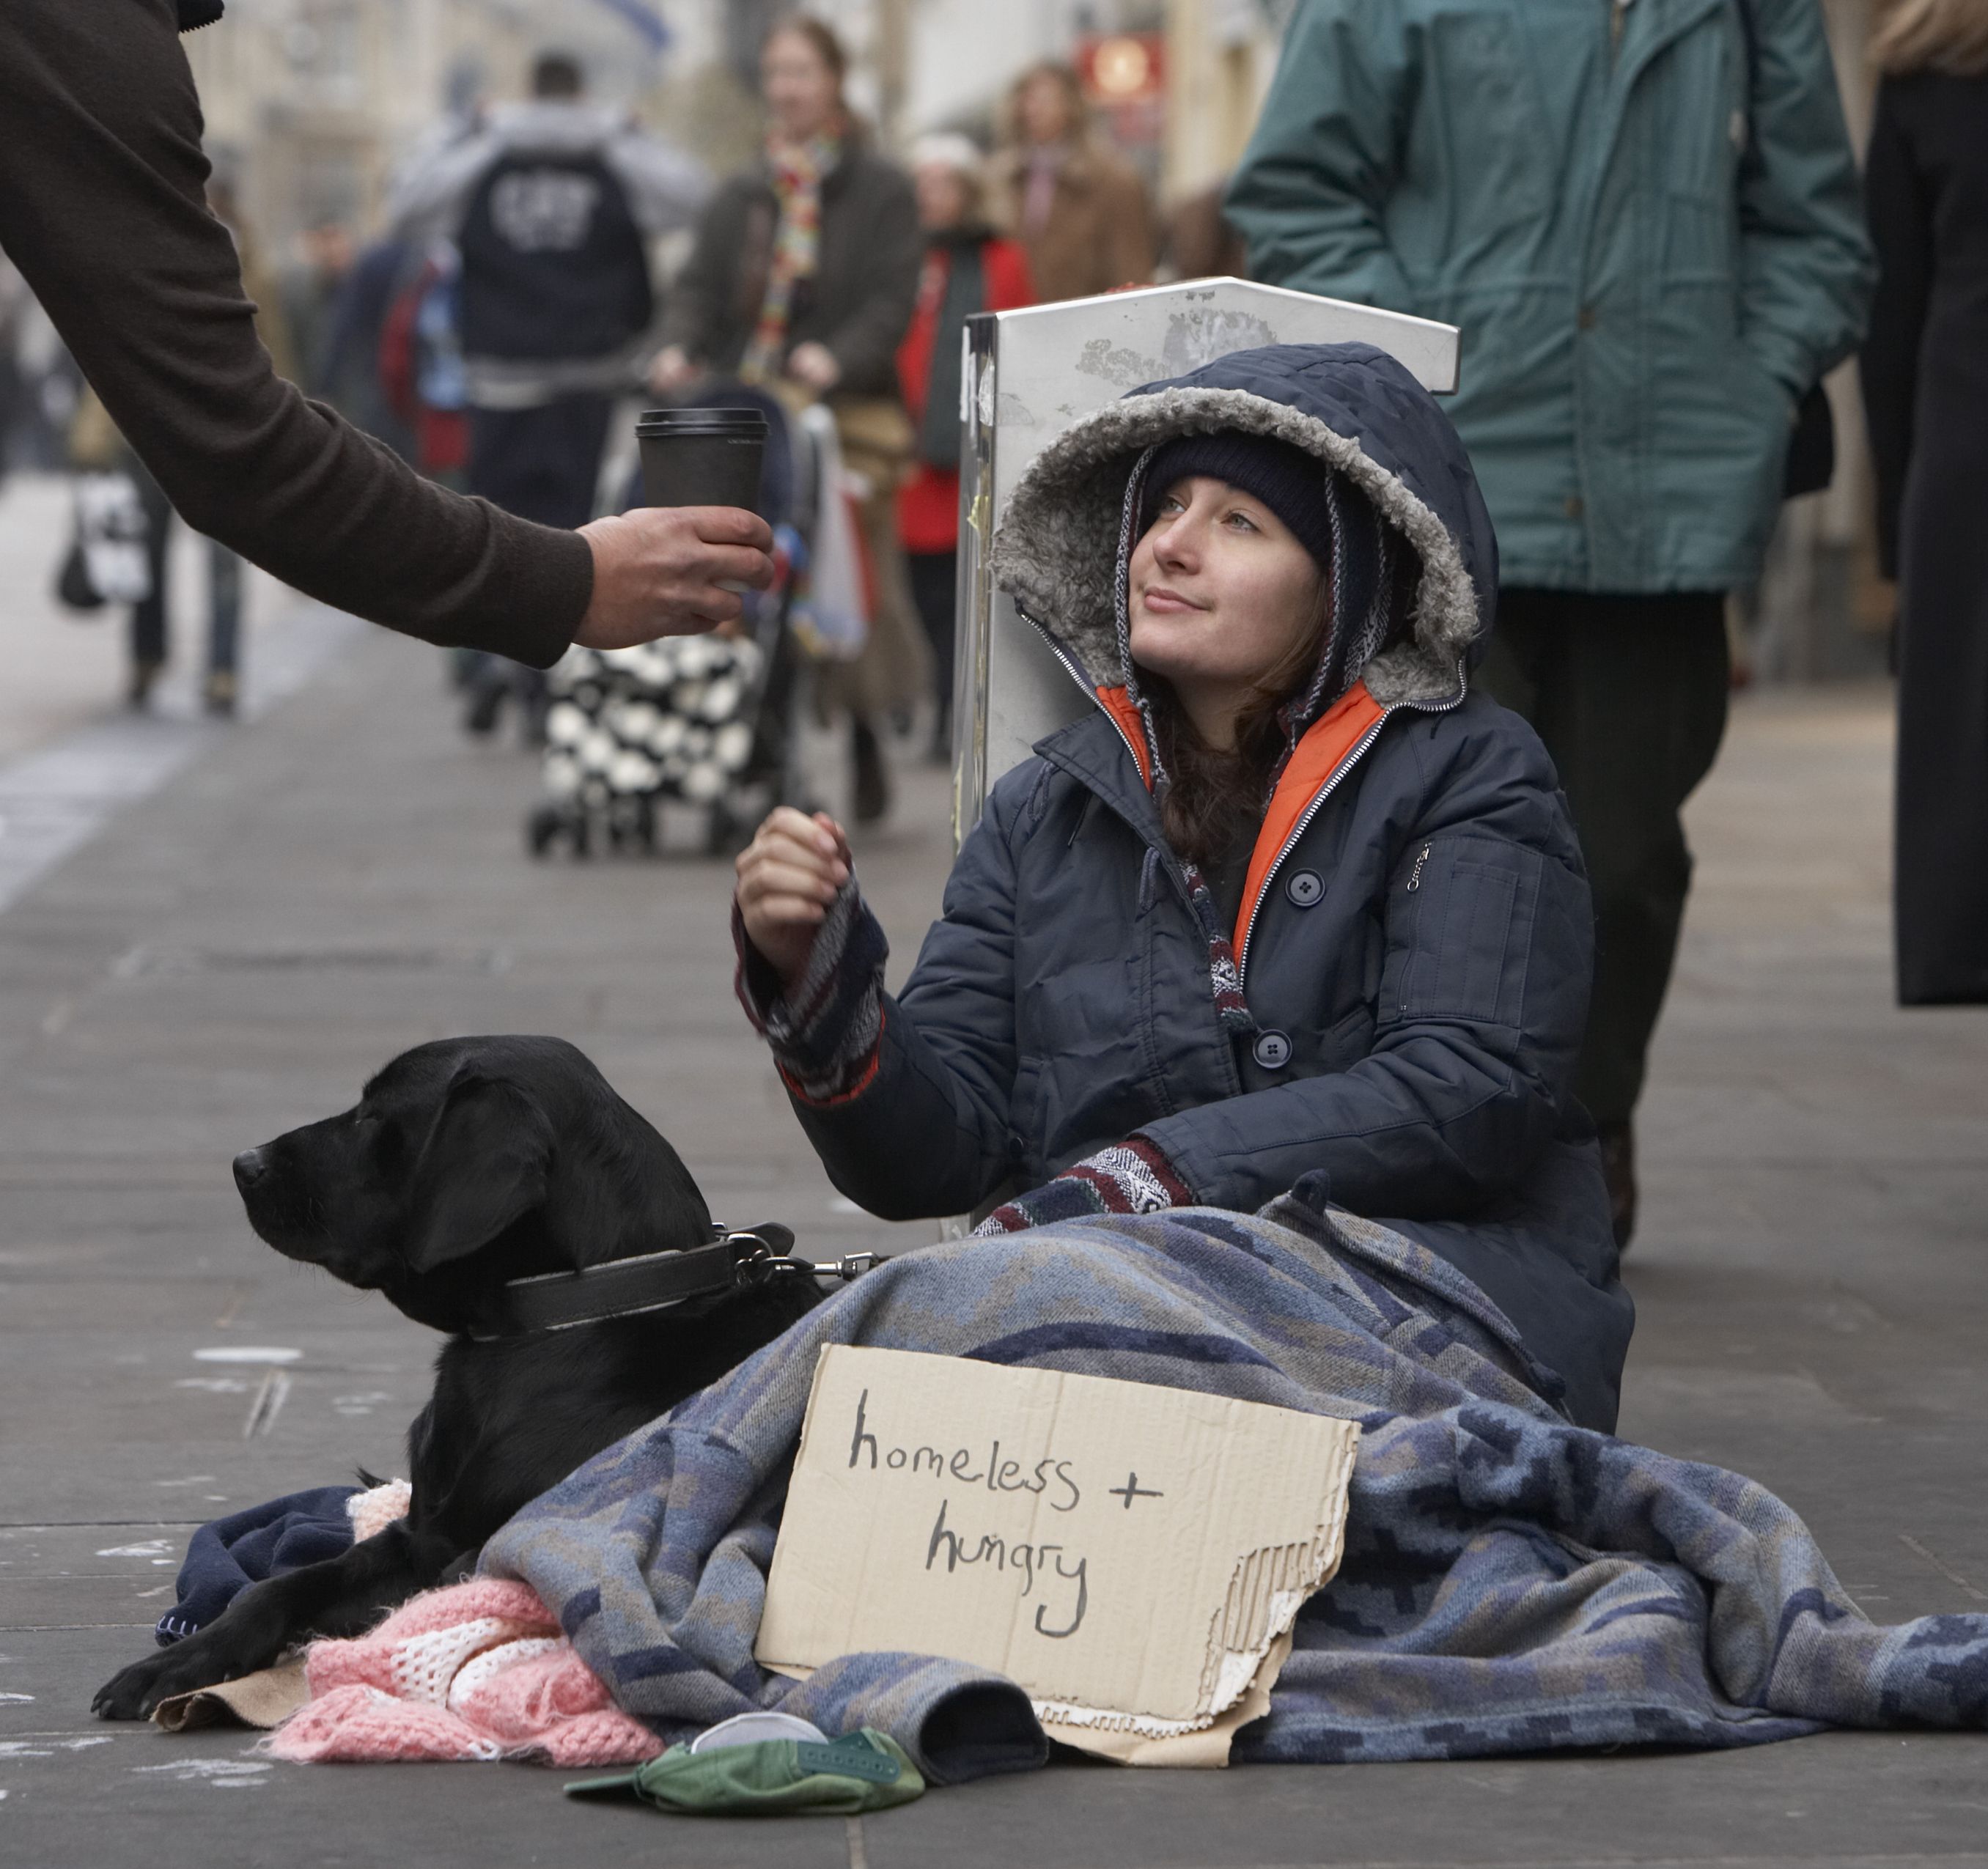 Index - Belföld - Megkedvelték a lakók a hajléktalant, ingatlant vennének neki